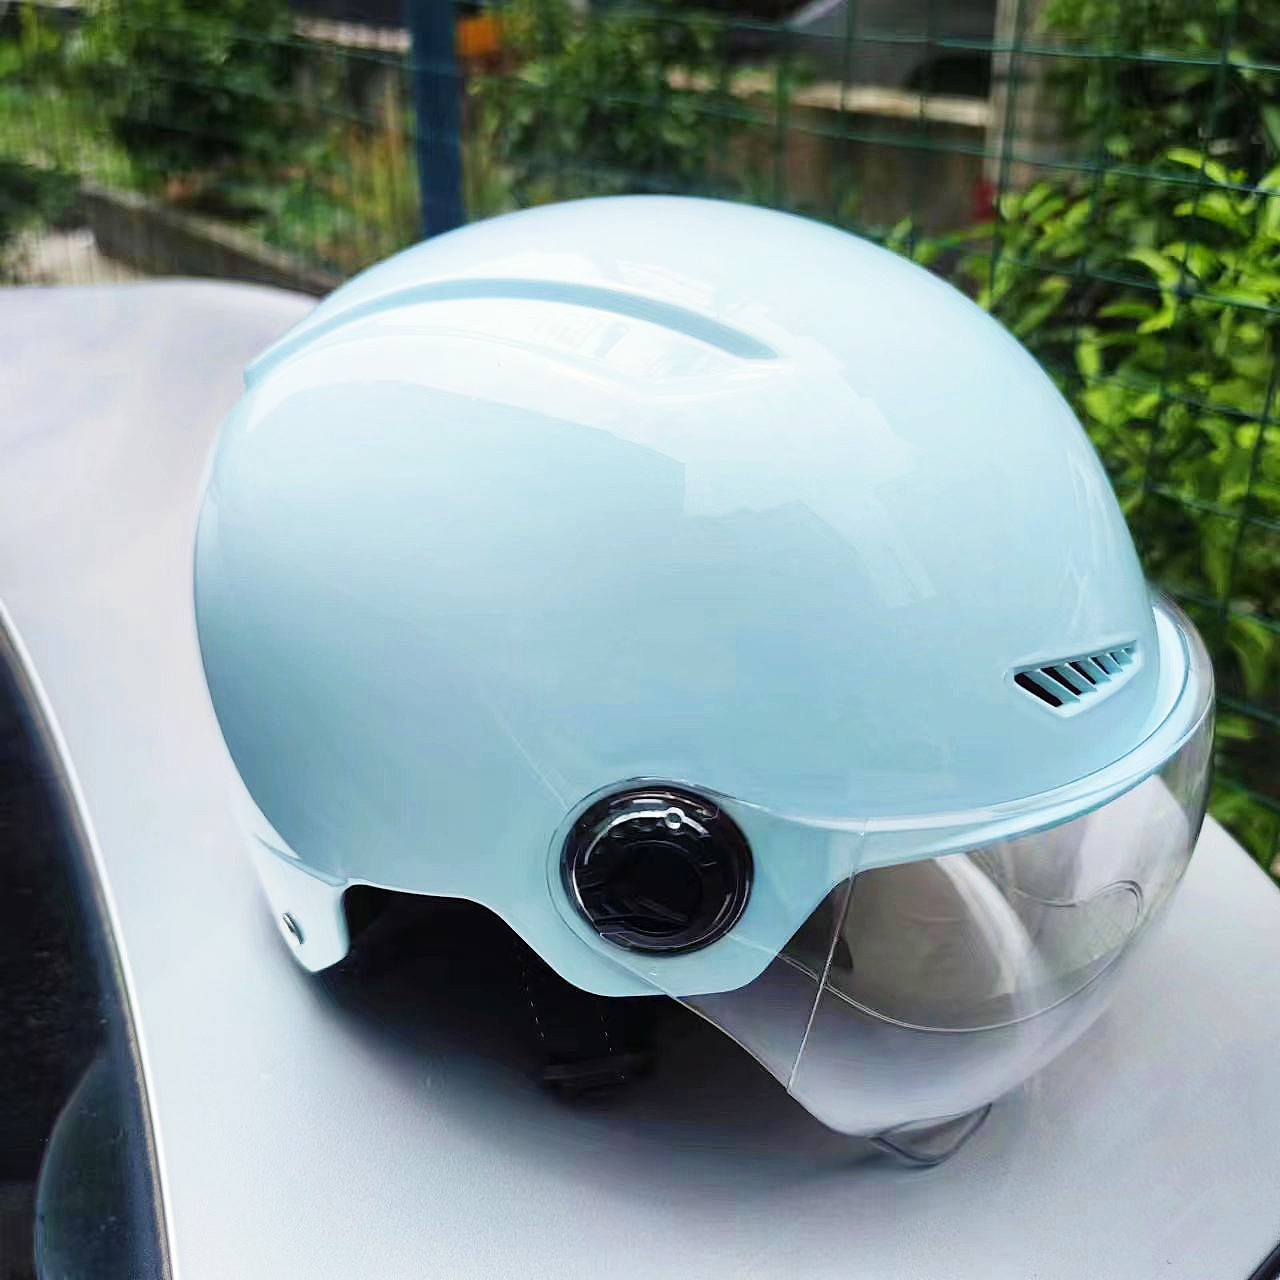 3C认证电动摩托车头盔男女夏季双镜半盔四季通用防晒轻便安全头帽